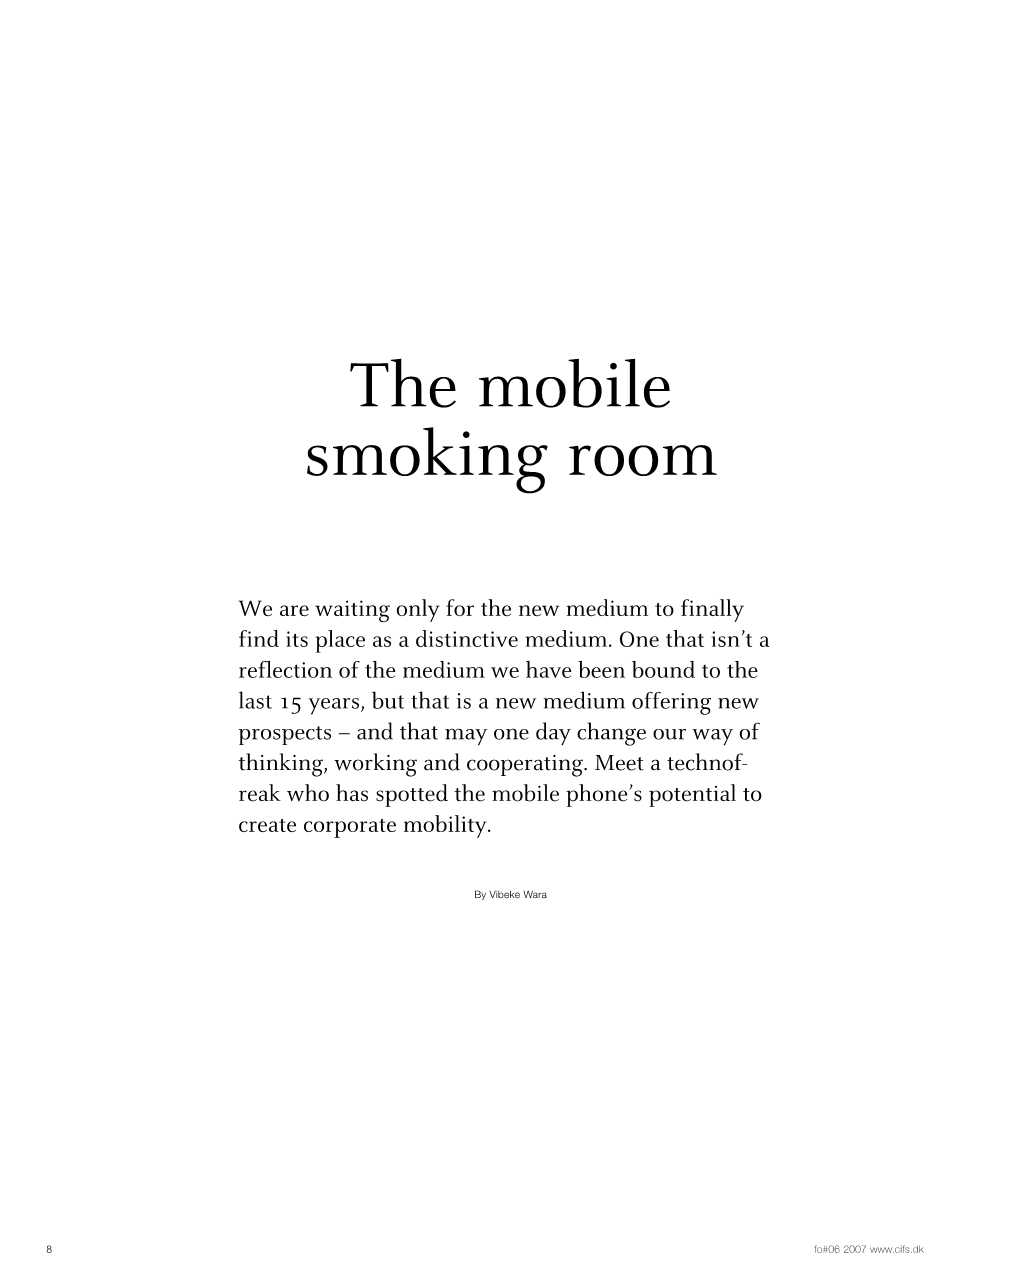 The Mobile Smoking Room